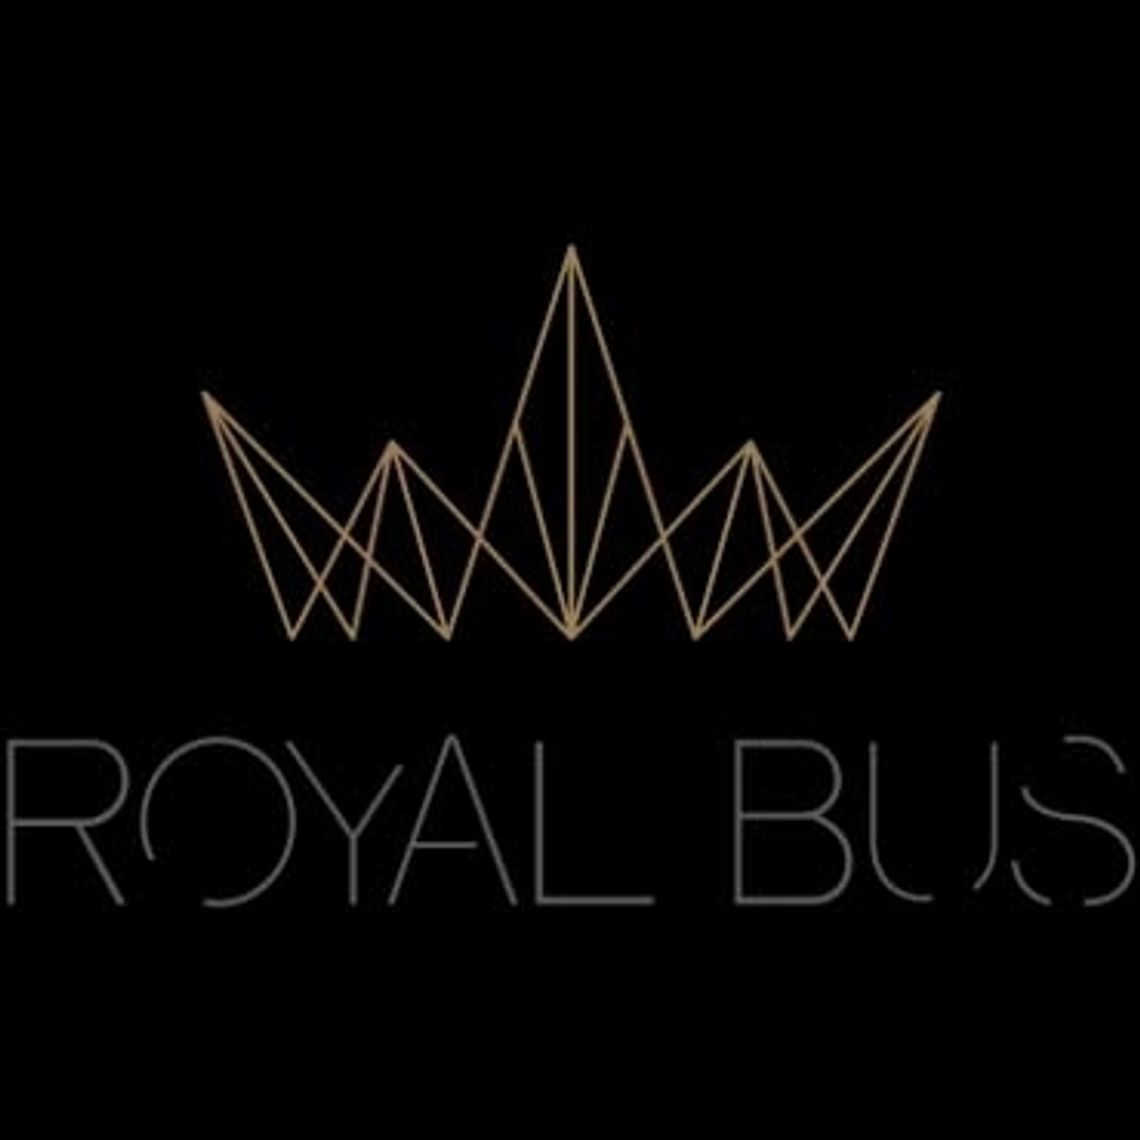 Royal Bus Kraków - wynajem busów i autokarów